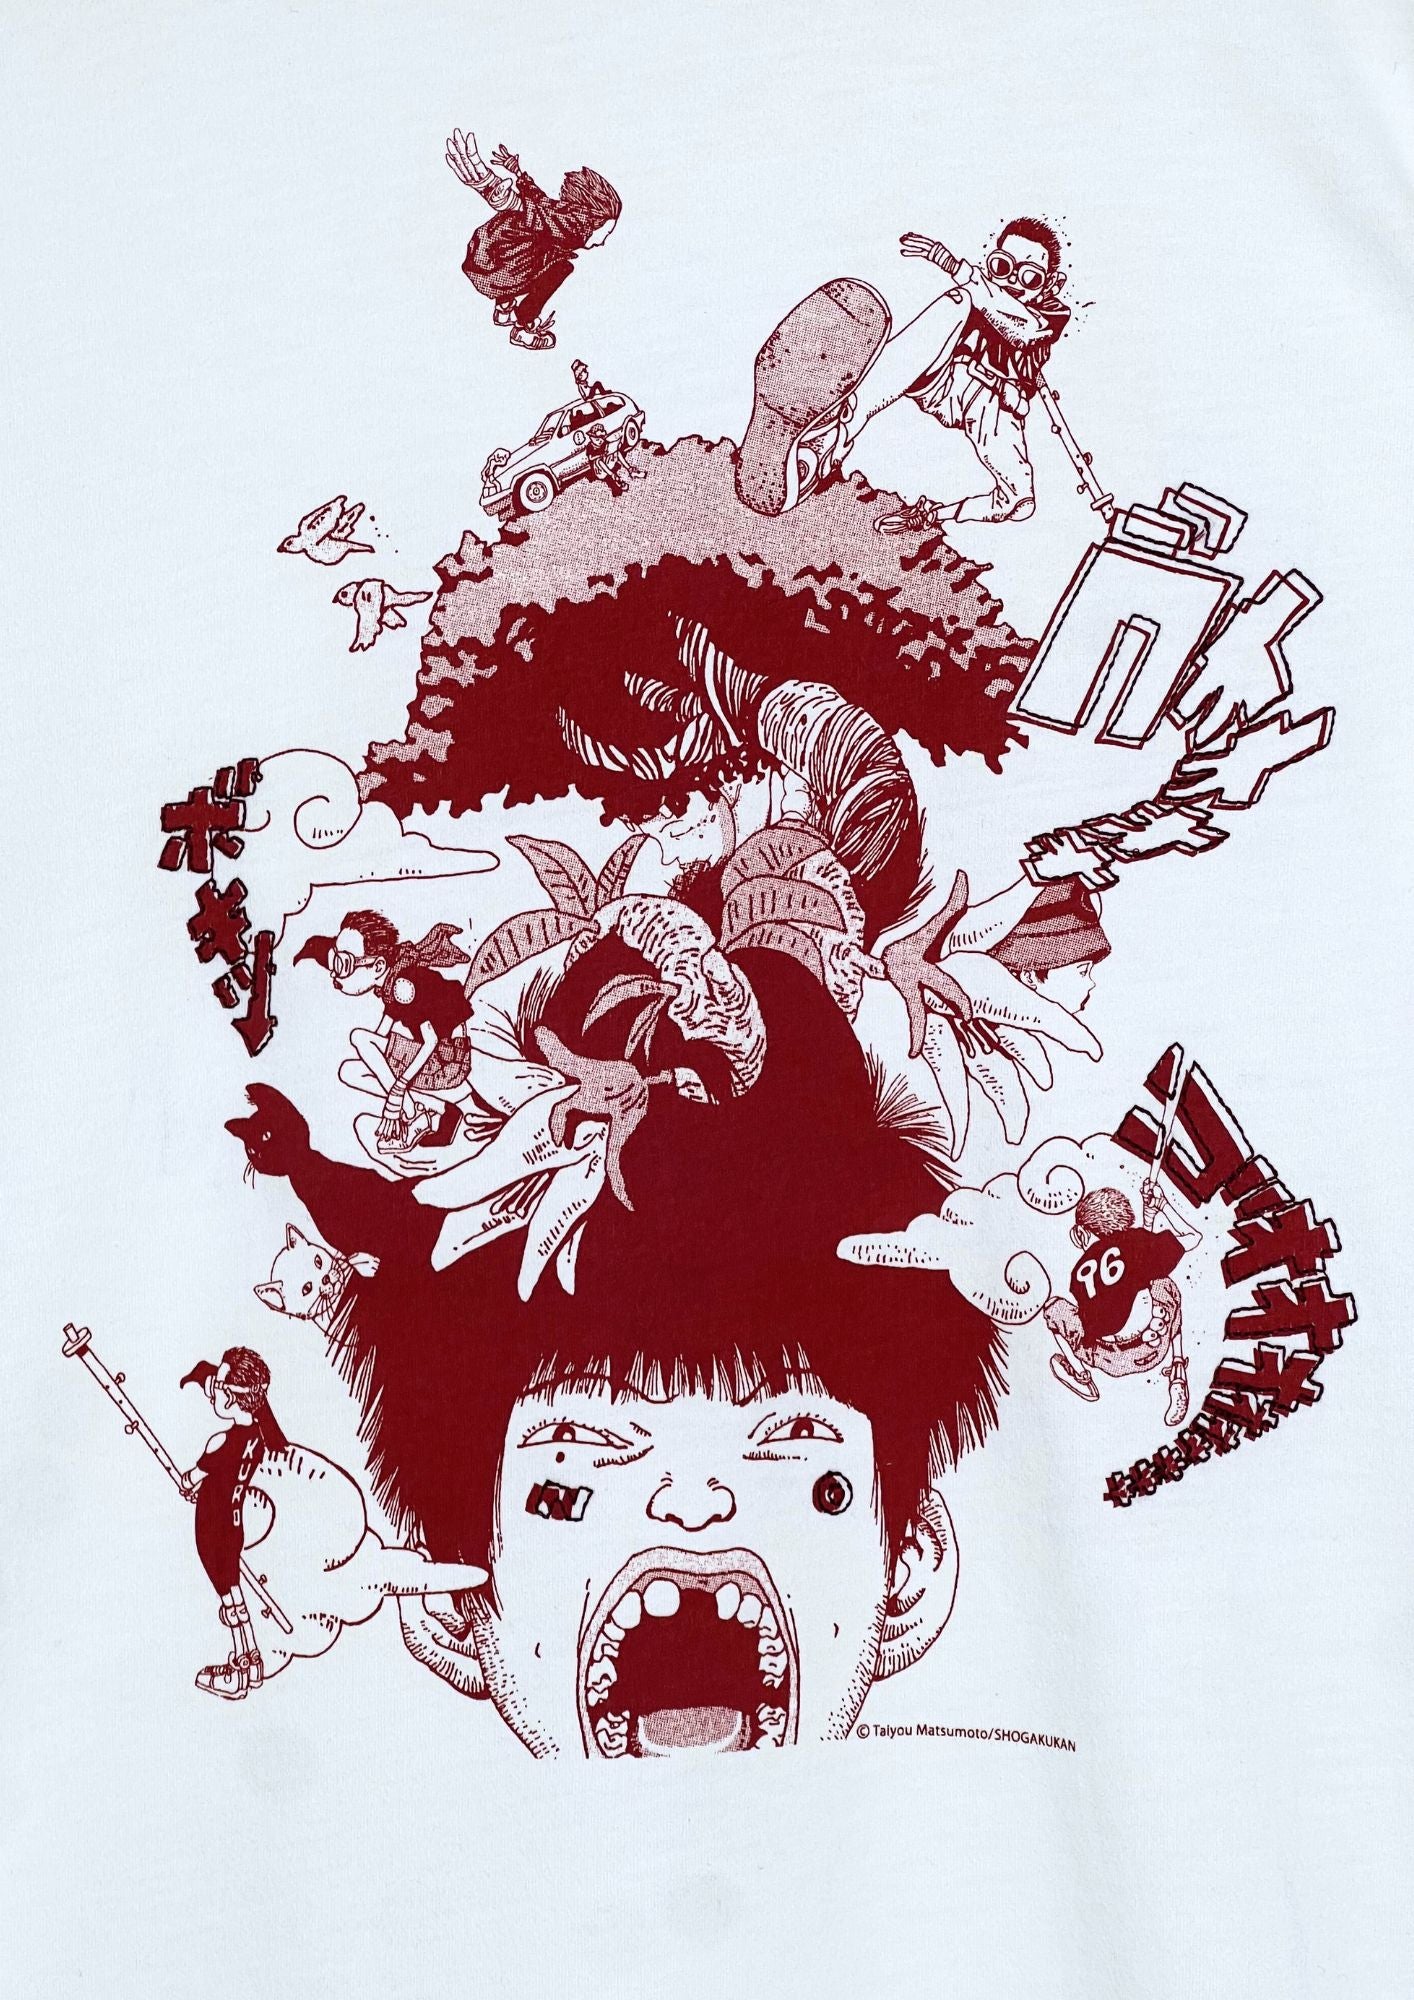 2010 Taiyo Matsumoto x UT Tekkonkinkreet T-shirt